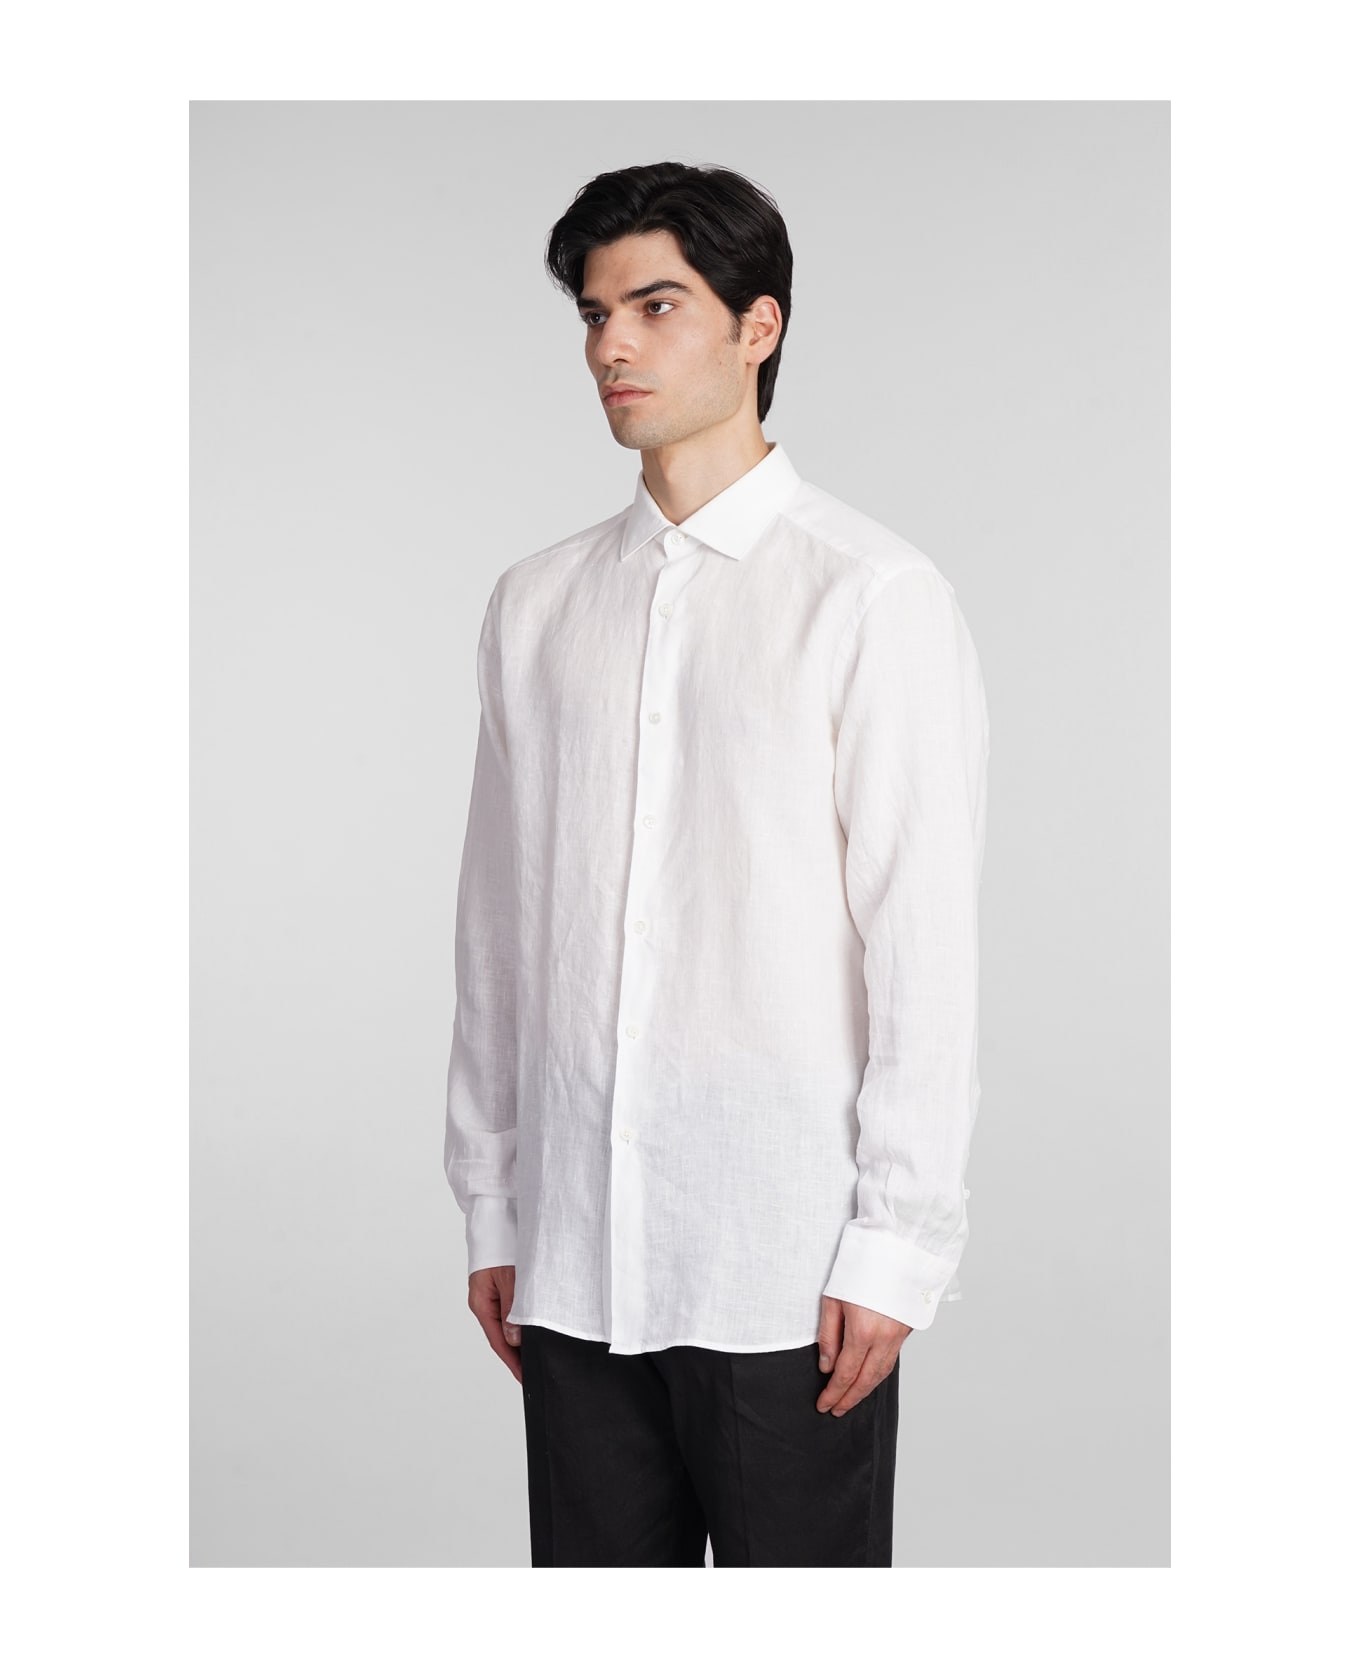 Zegna Shirt In White Linen - white シャツ